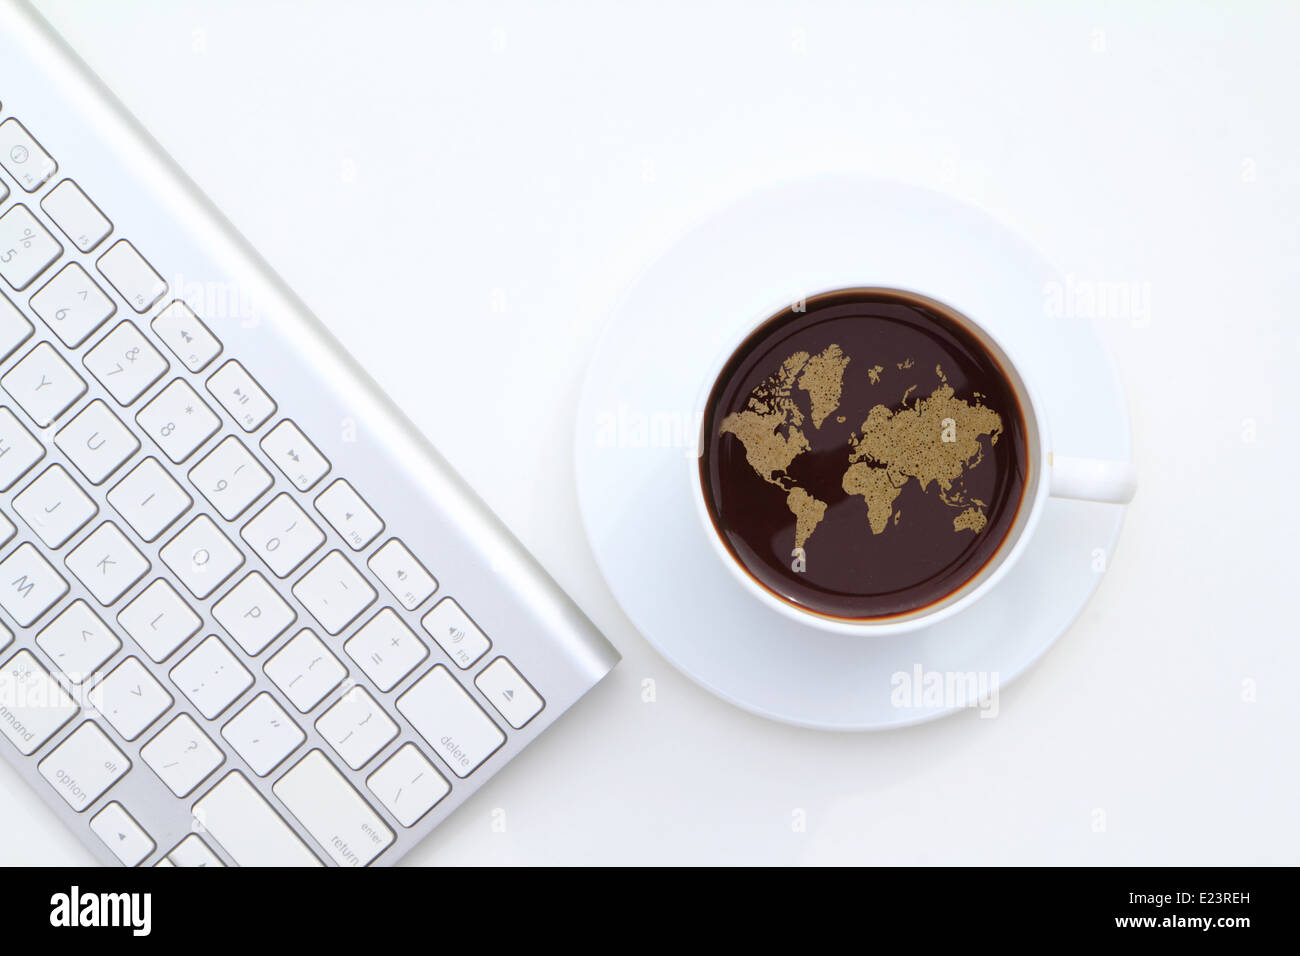 Une tasse de café avec sa forme en mousse dans une carte du monde présenté sur fond blanc à côté du clavier de l'ordinateur Banque D'Images